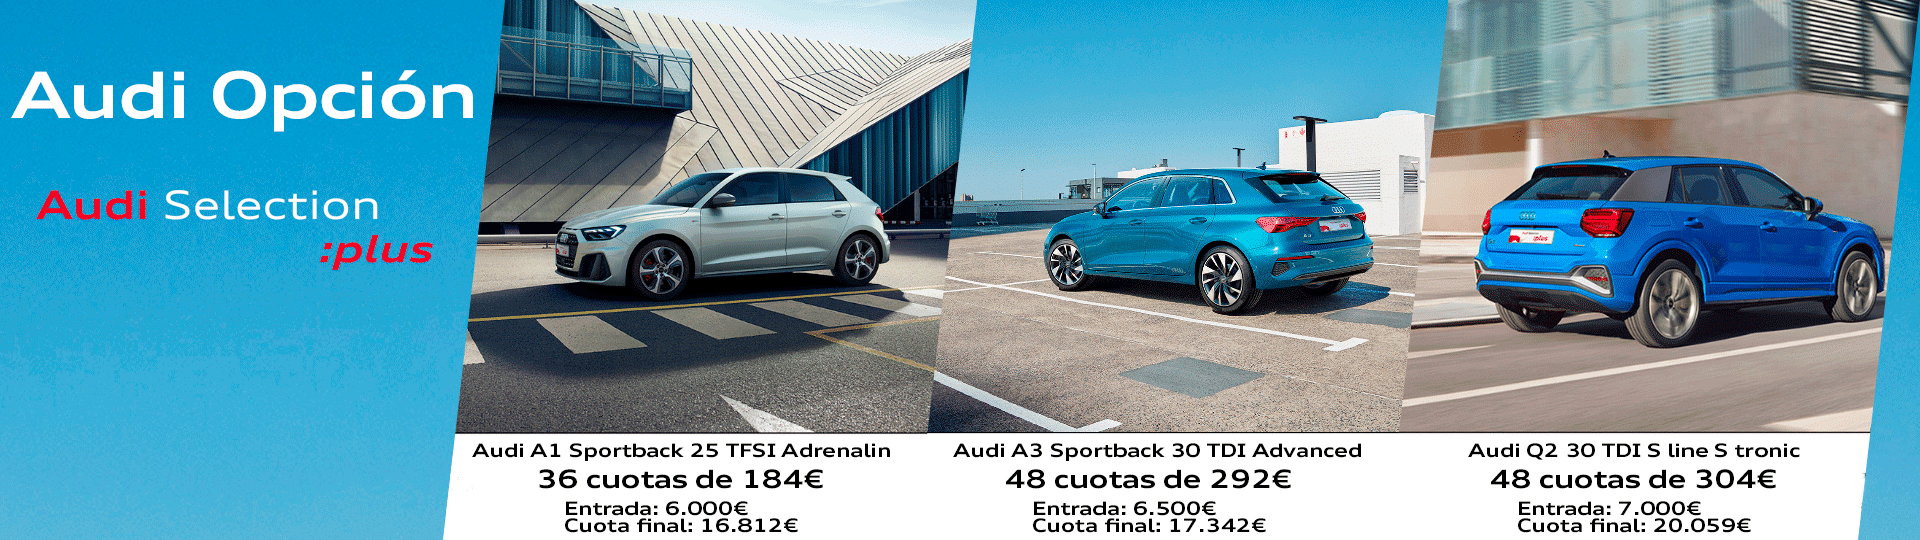 Cabecera-Home-Audi-Opcion-aSP